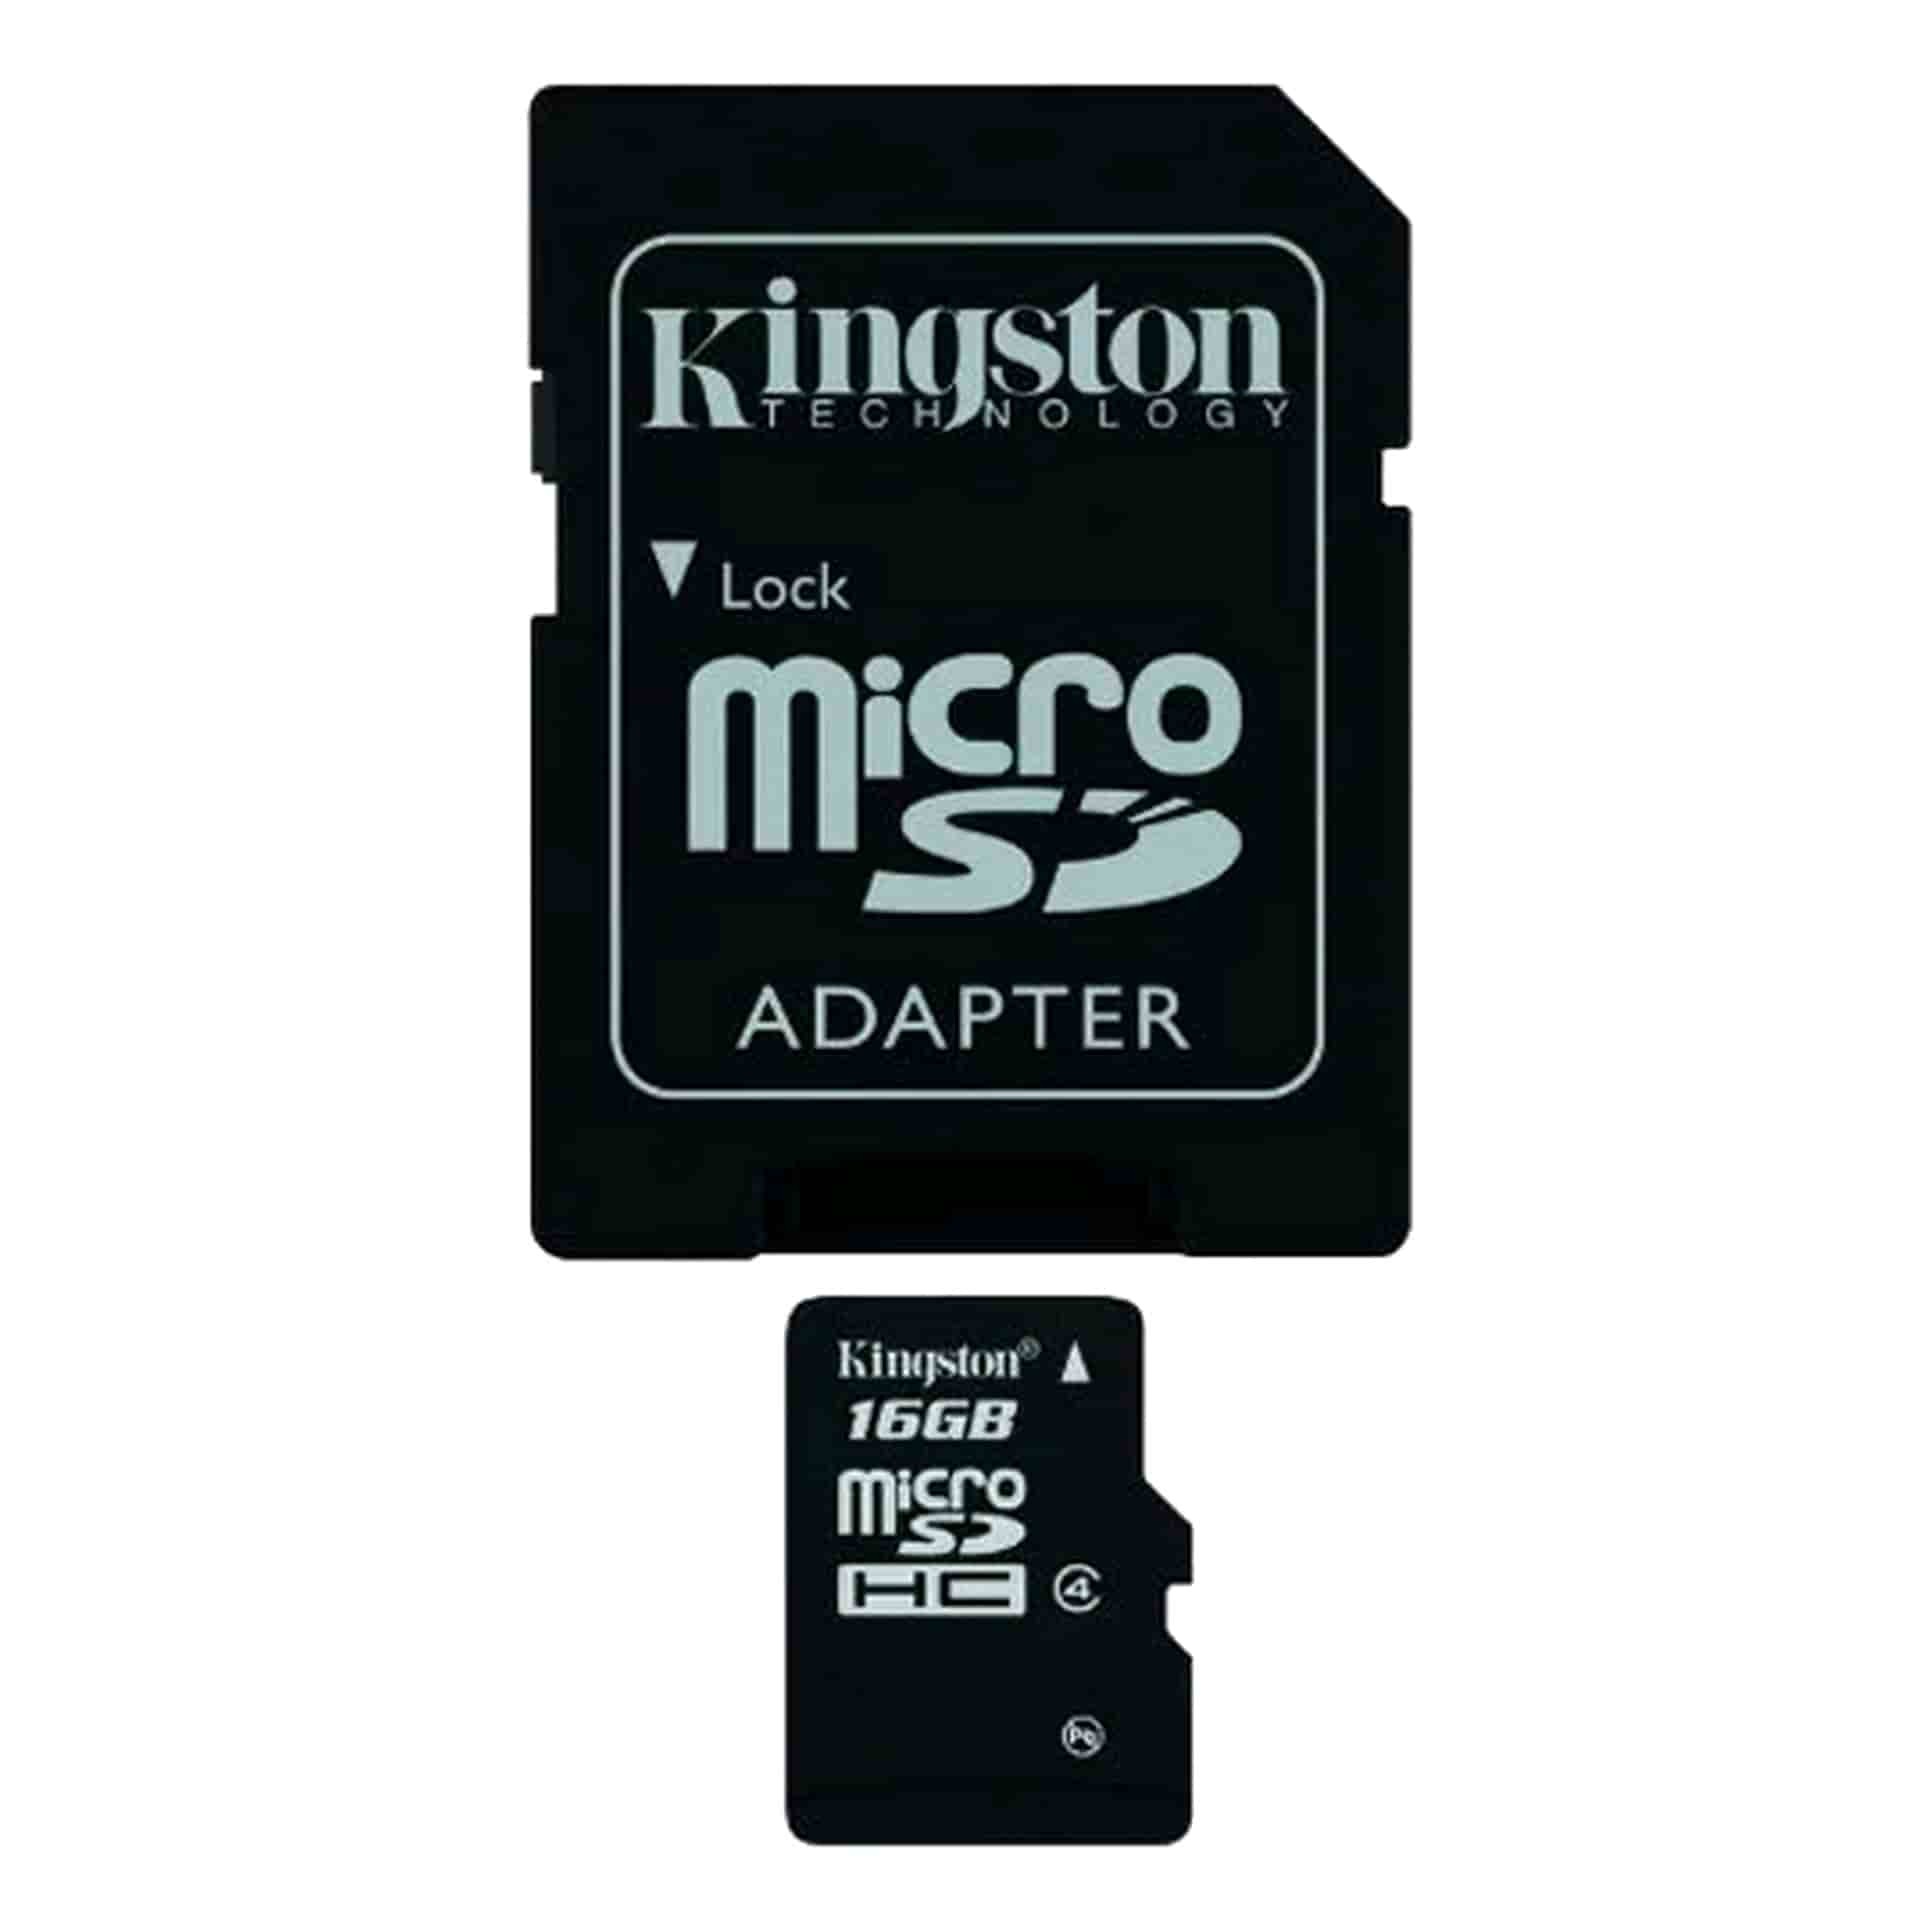 Кингстон микро. MICROSDHC 8gb Kingston class 10. Карта памяти 8gb Kingston sdc10/8gb MICROSDHC class 10 (SD Adapter). Kingston 4 GB MICROSDHC class 4. Kingston MICROSDHC class 4 32gb (sdc4/32gbsp).